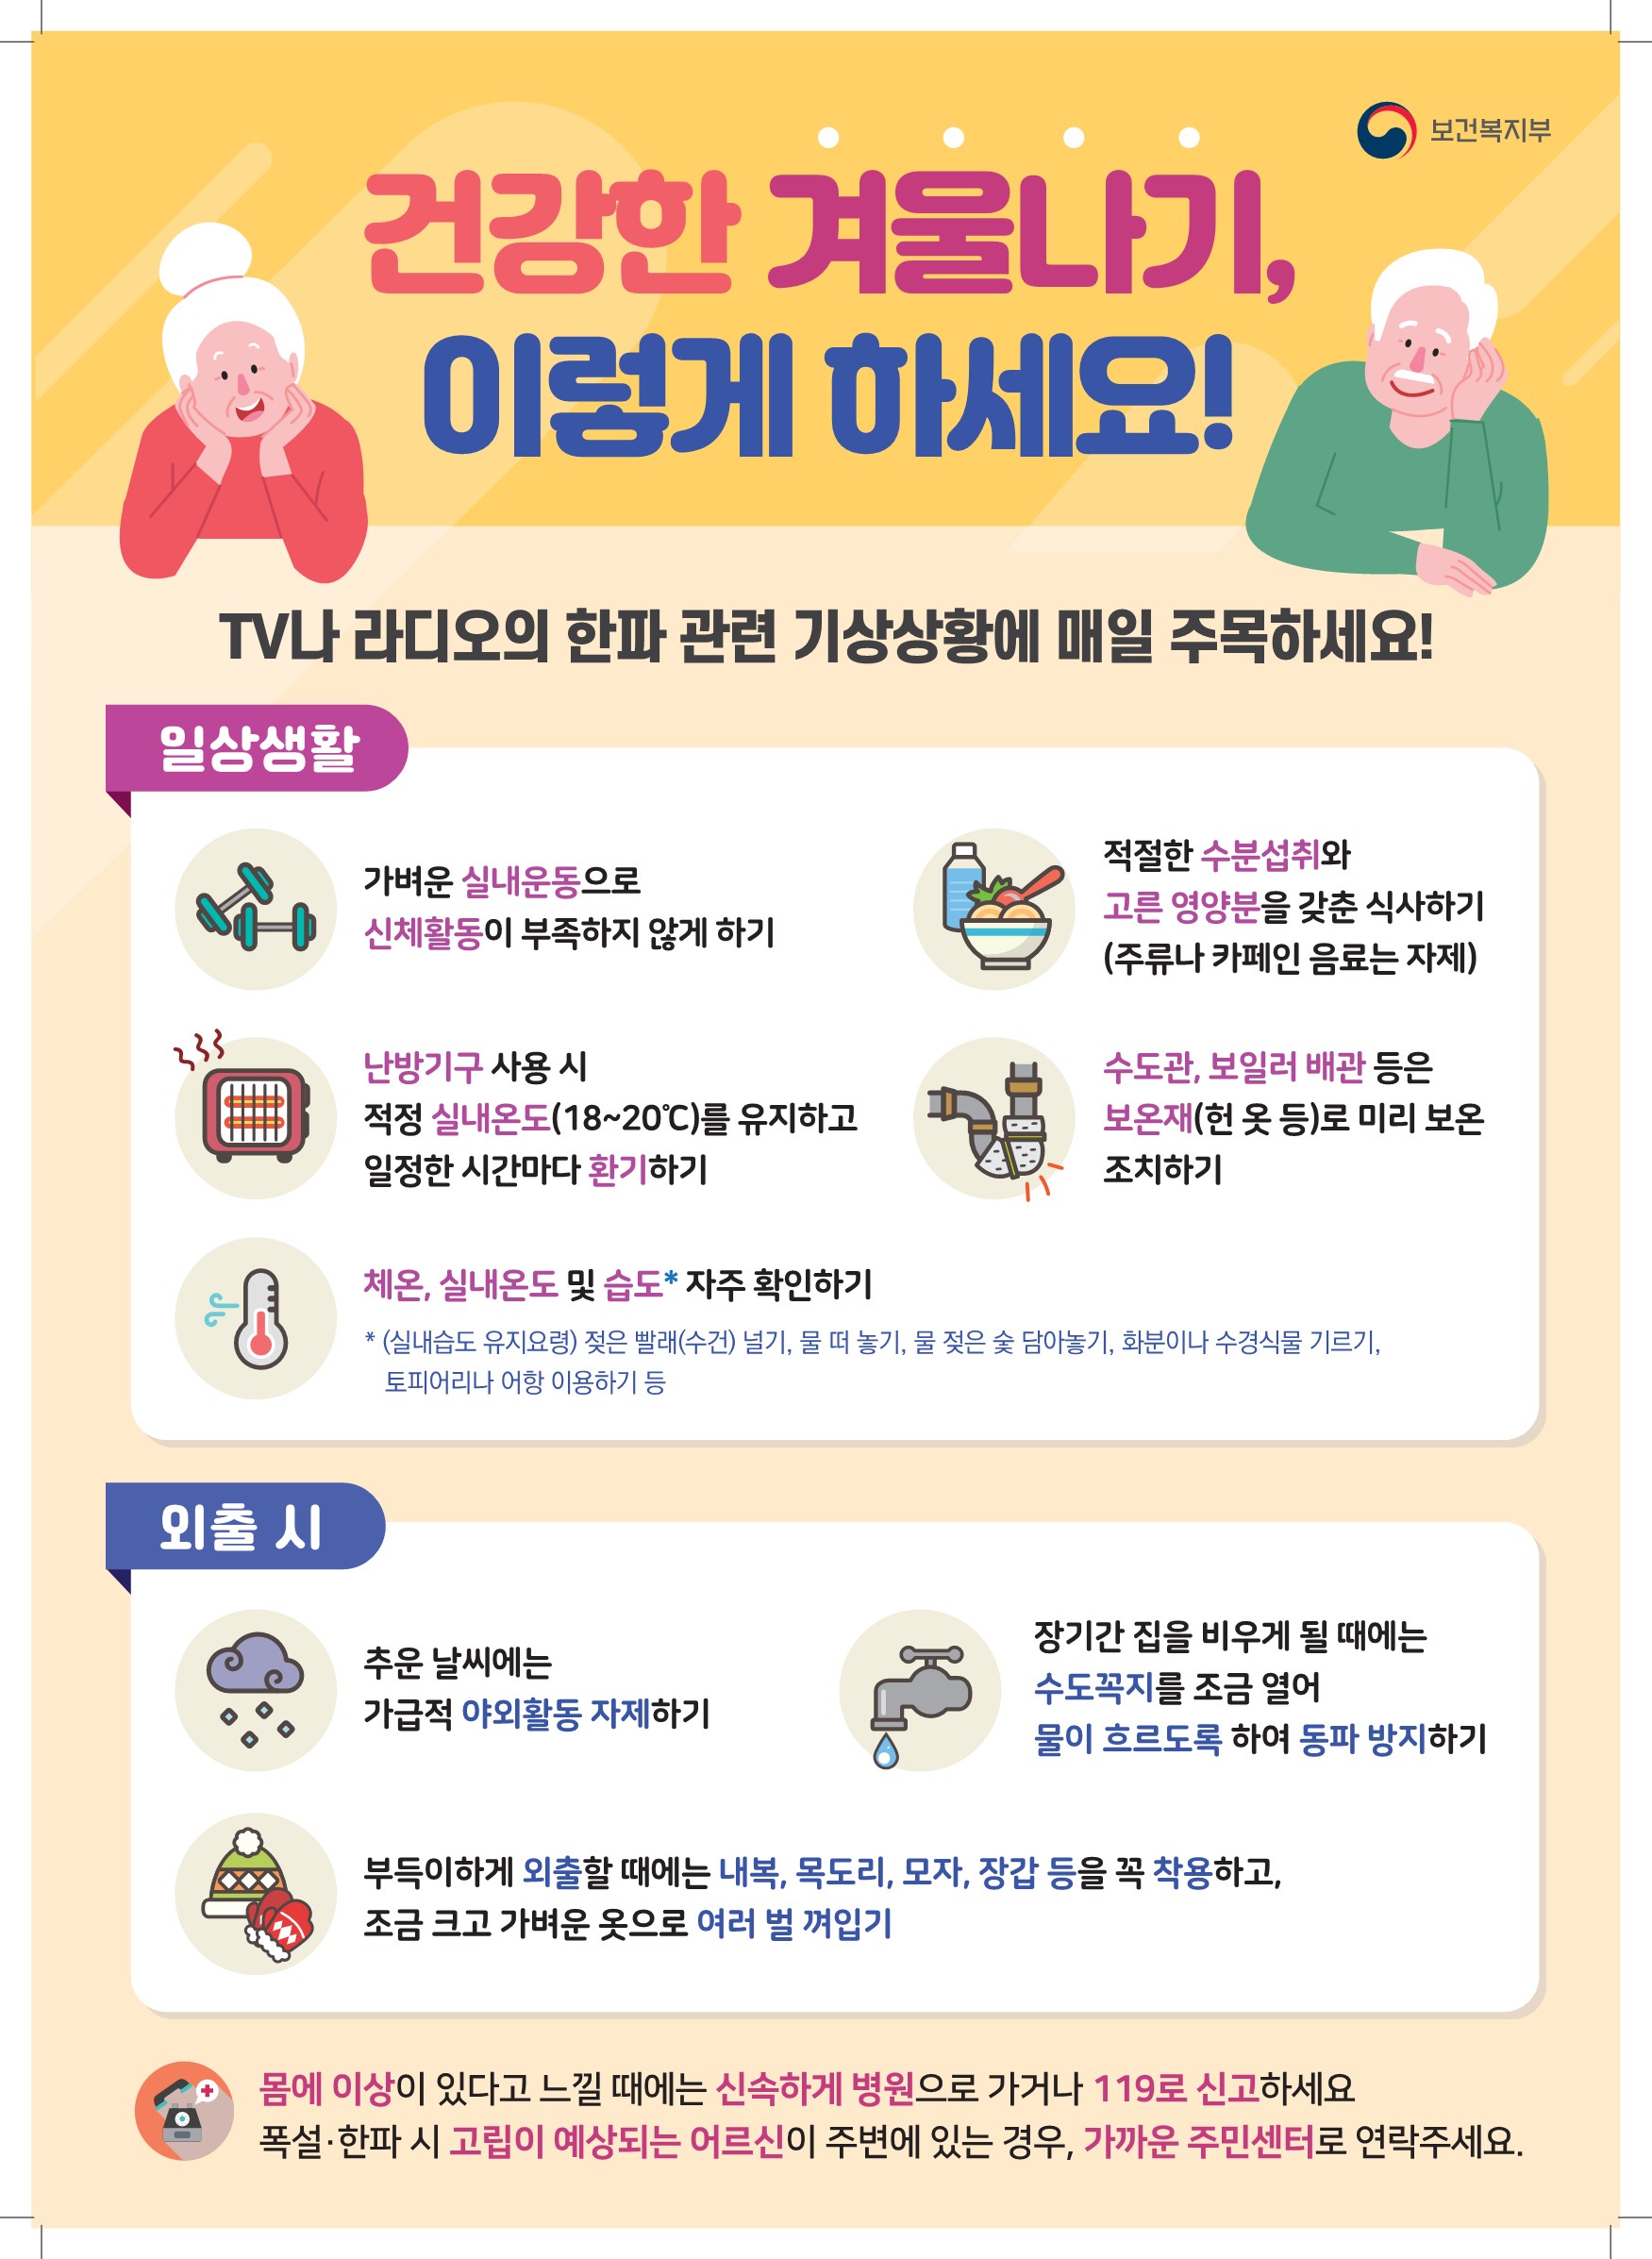 (참고) 2020년 노인 한파 대비 행동요령 포스터_최종_1.jpg